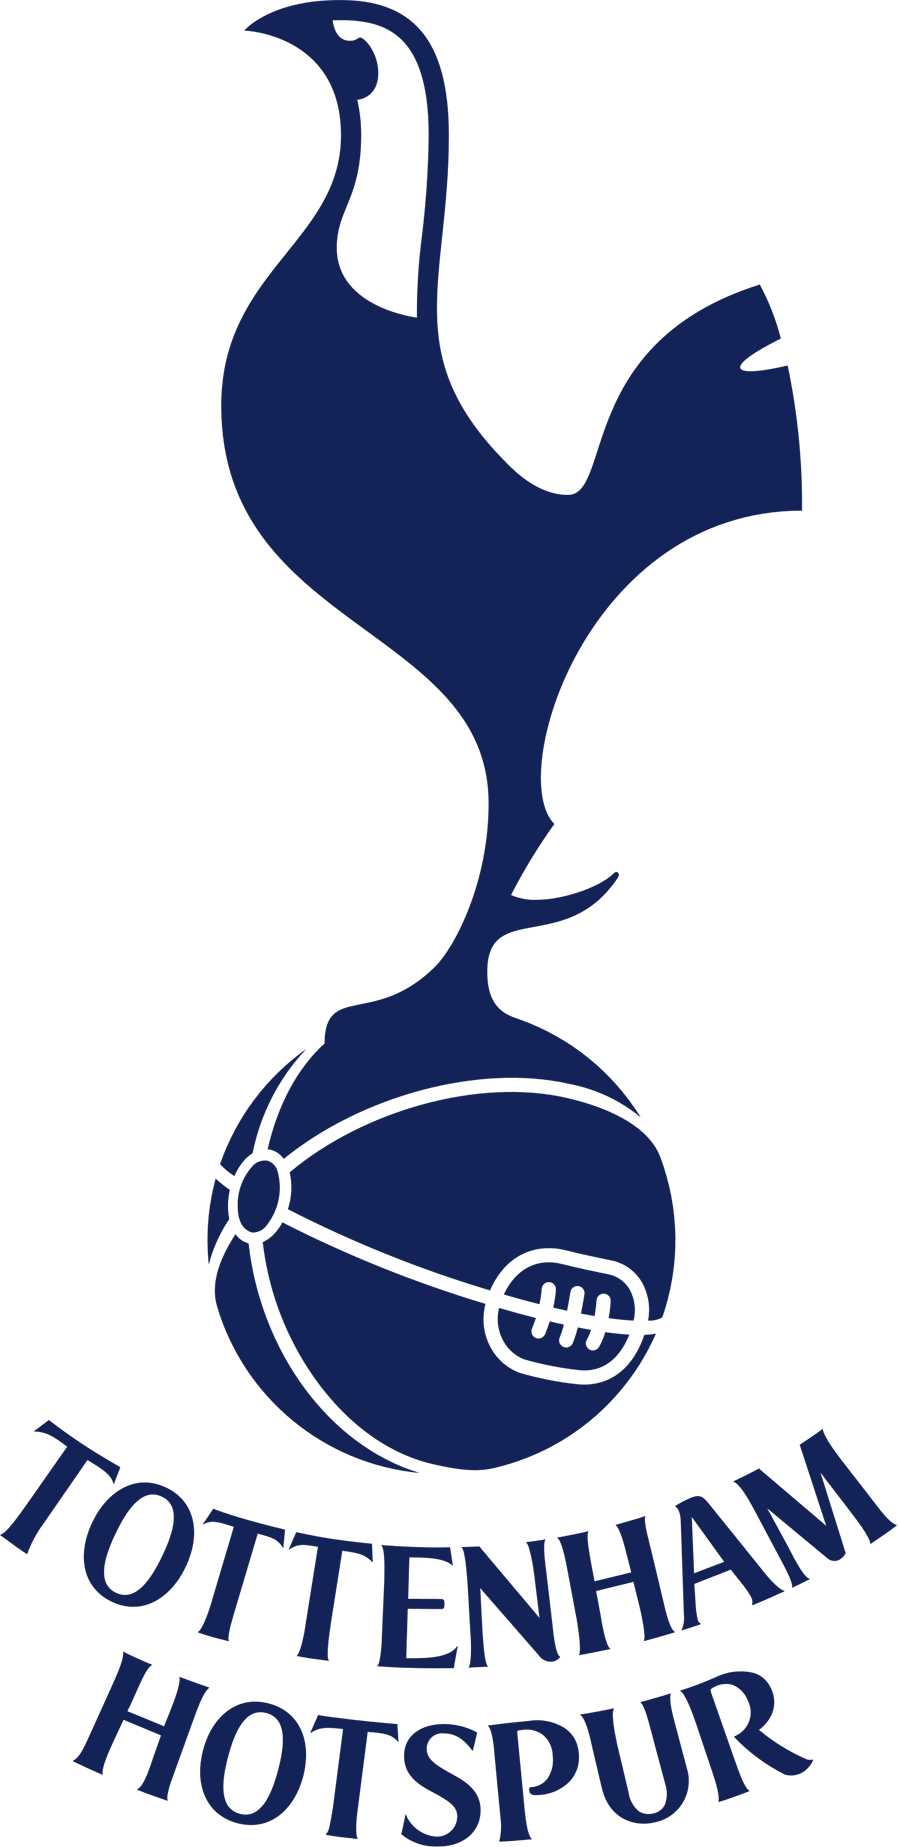 Ý nghĩa logo Tottenham Hotspur - Gà trống thành phố London